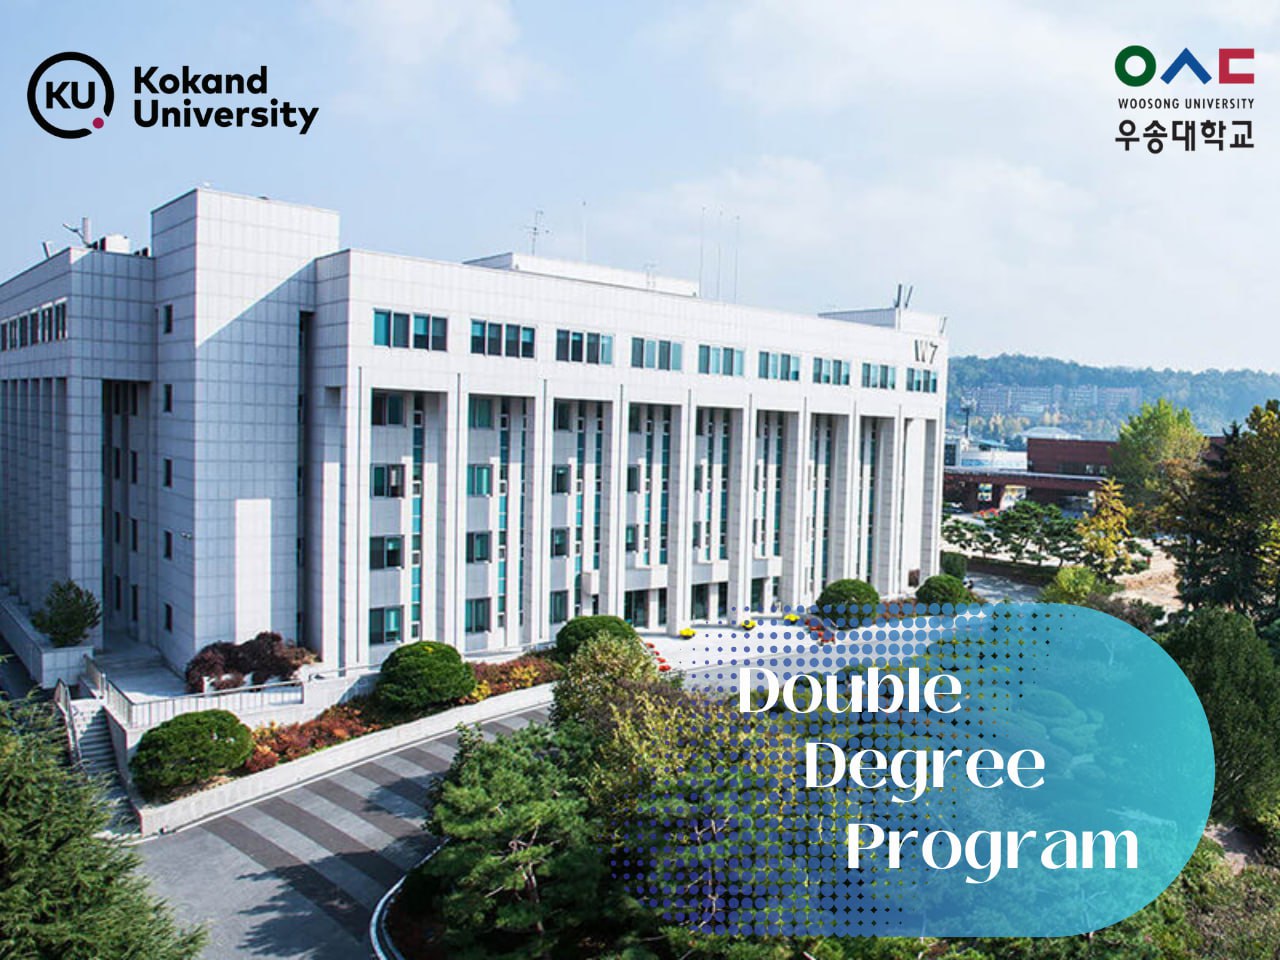 Не упустите возможность получить диплом Кокандского университета и Университета Woosong, продолжая обучение в престижном южнокорейском университете.